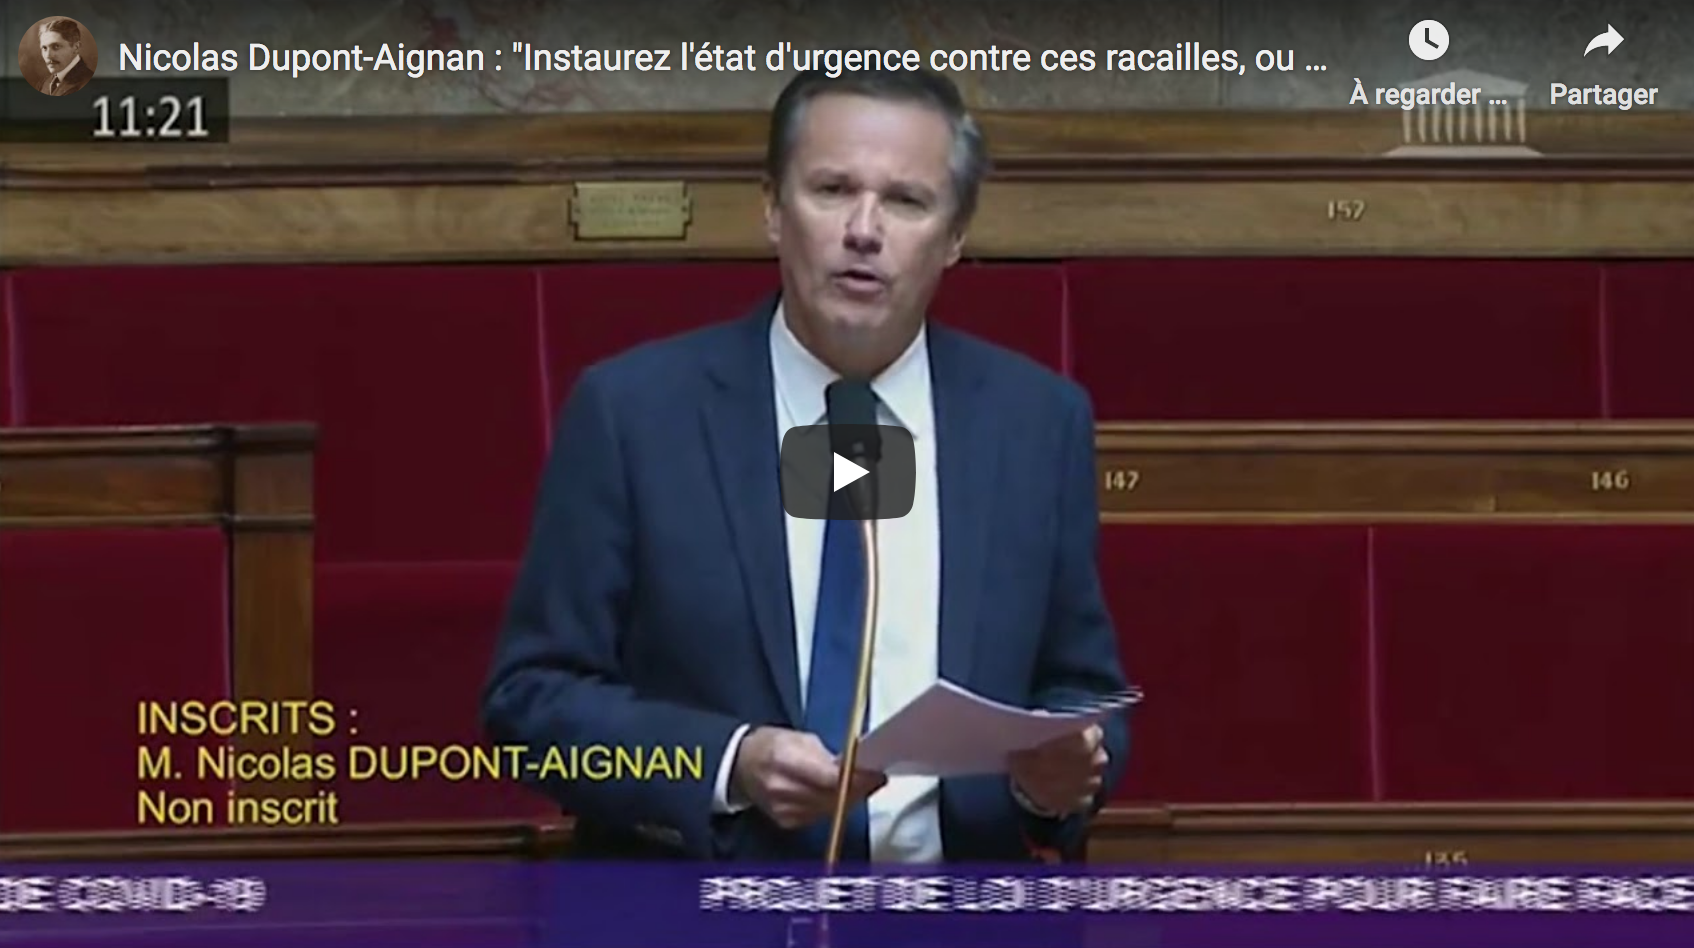 Nicolas Dupont-Aignan : “Instaurez l’état d’urgence contre ces racailles, ou au moins un couvre-feu” (VIDÉO)